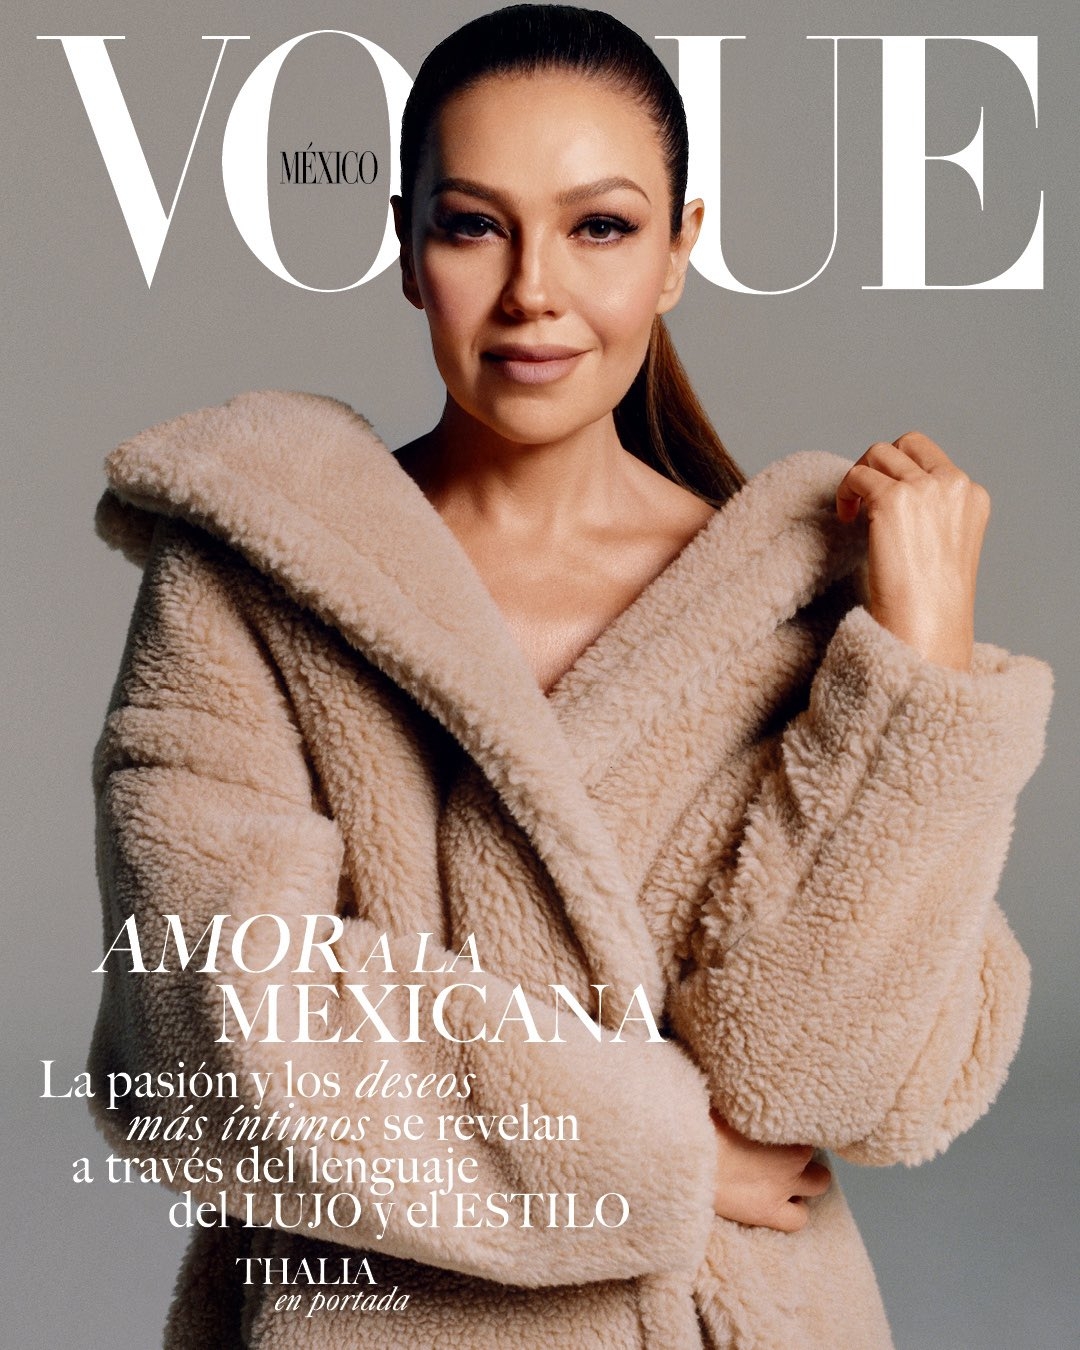 Vogue incluye a la cantante mexicana Thalía en su portada